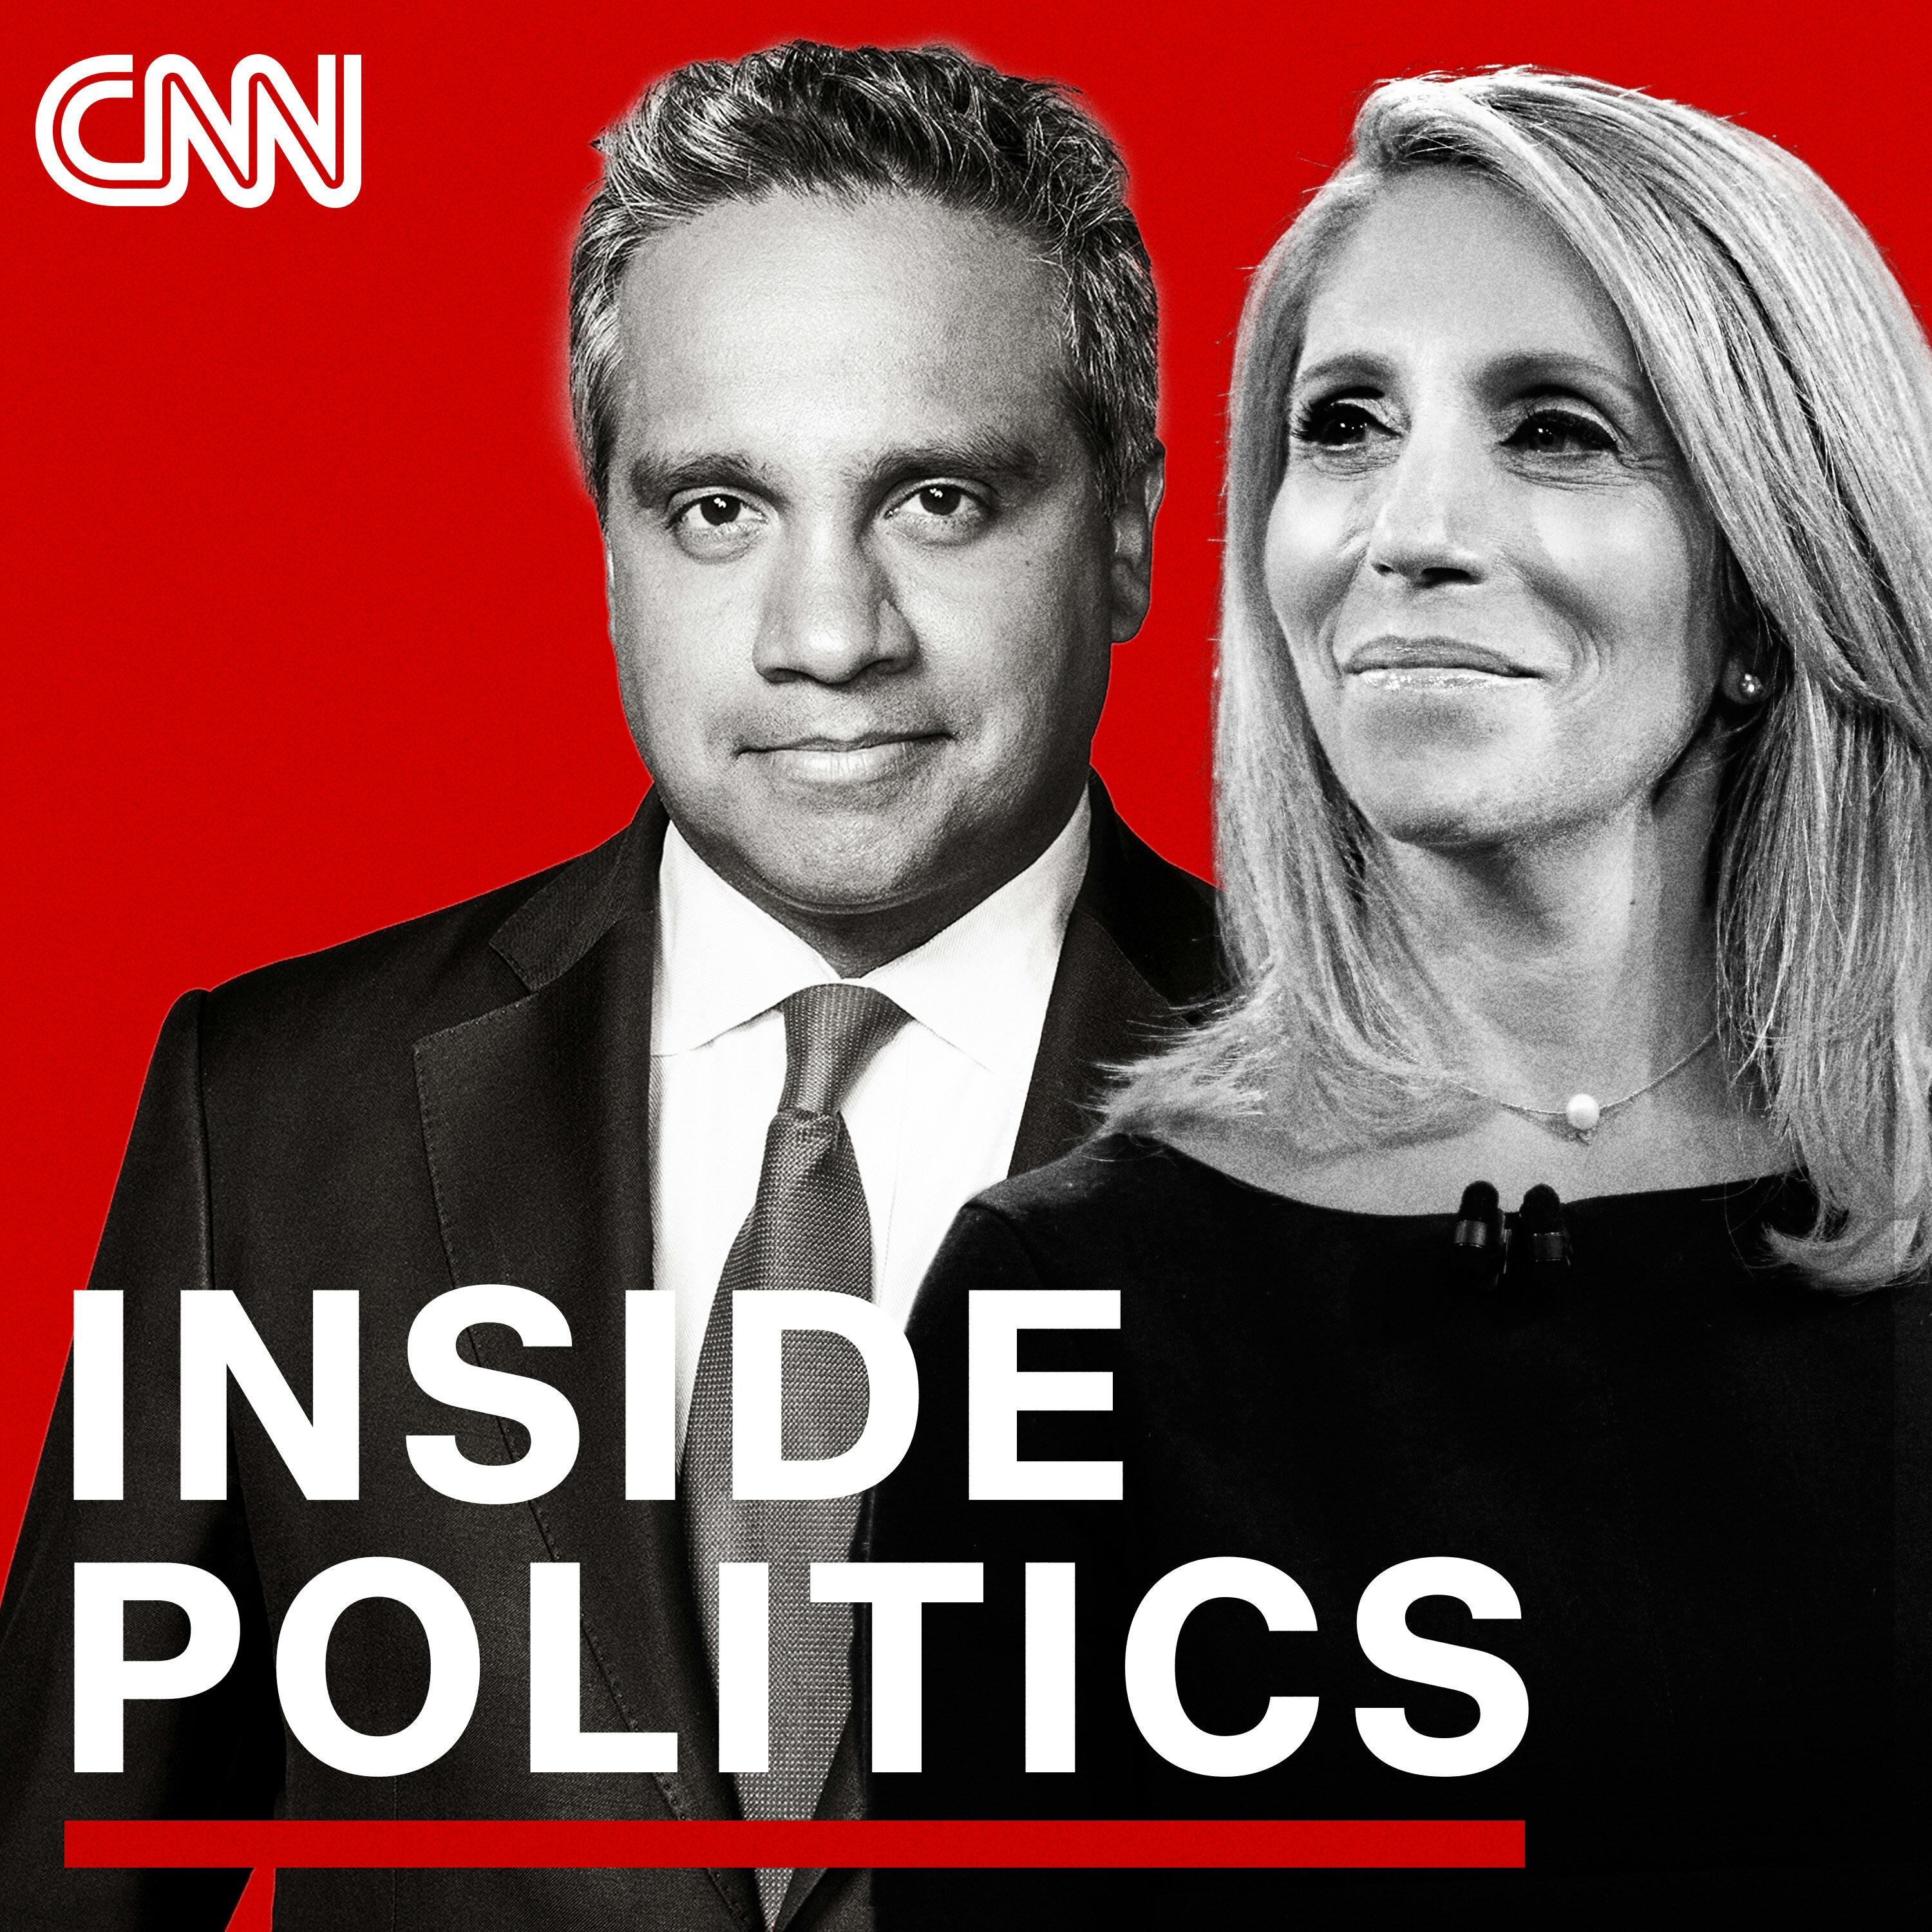 Inside Politics Podcast Update For Wednesday, September 1, 2021